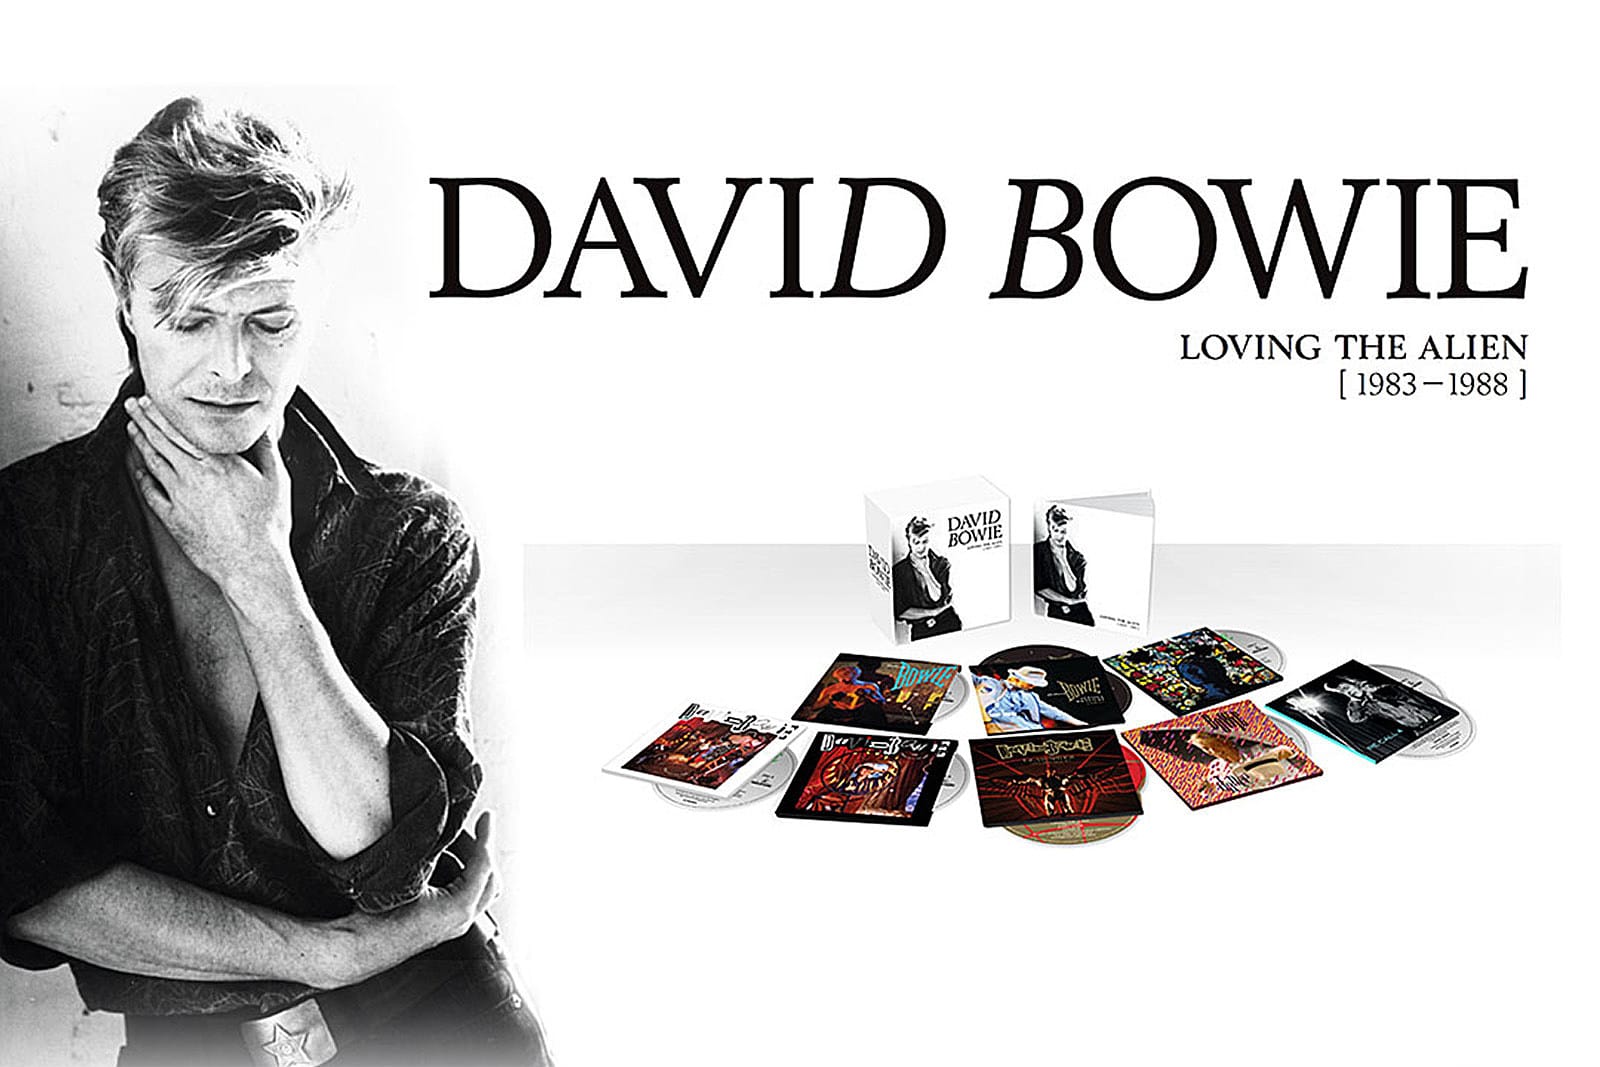 David Bowie: Loving the Alien (1983-1988)